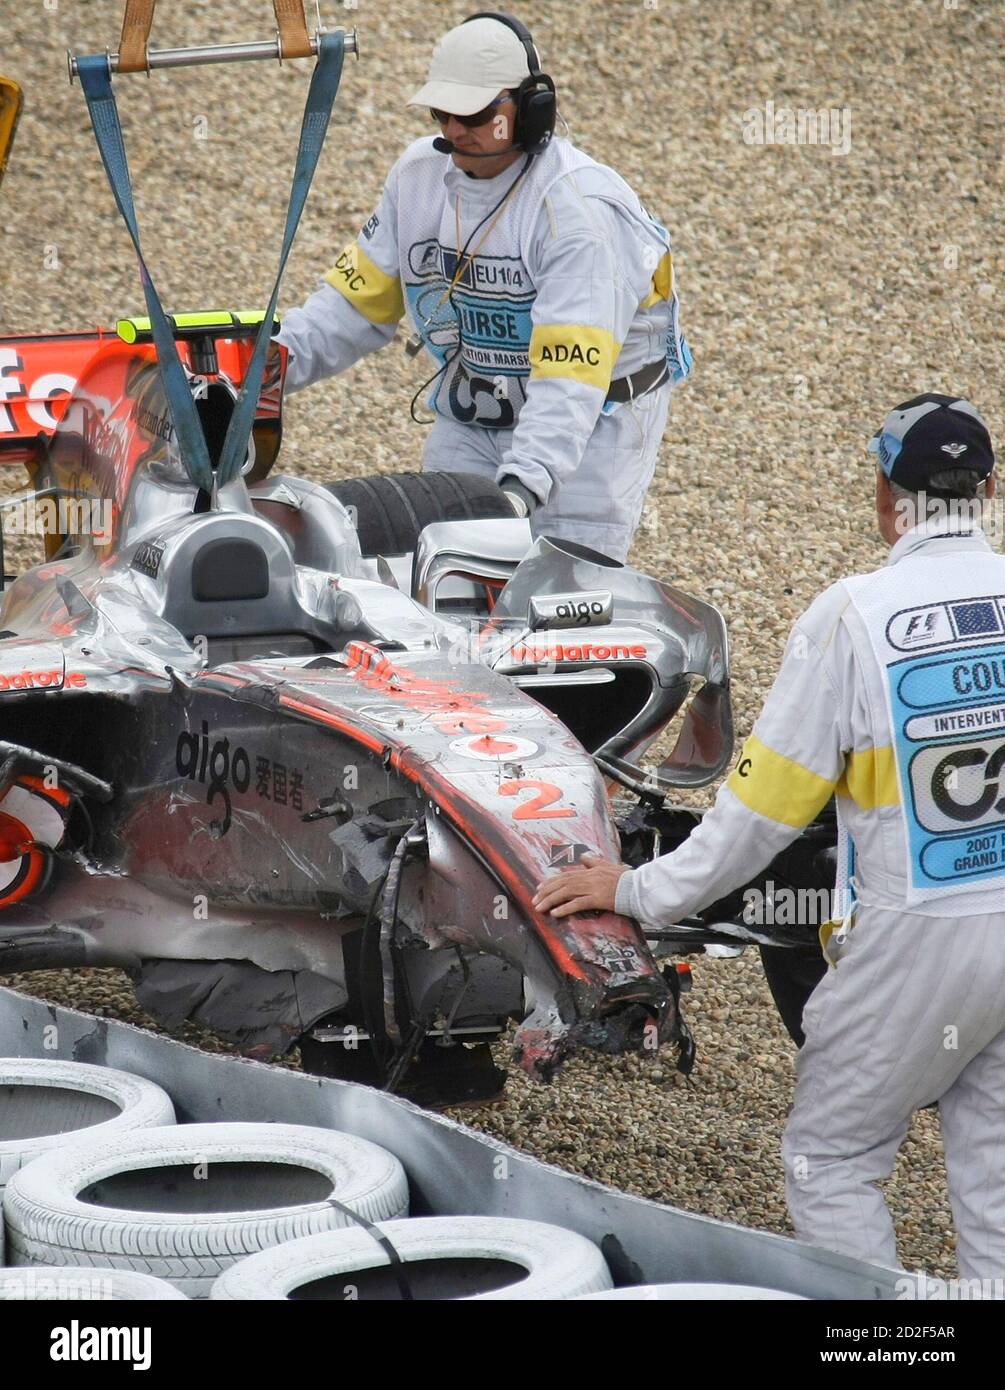 Das Wrack der McLaren Mercedes Formula Car of Lewis Hamilton von Großbritannien ist von der Strecke wiederhergestellt, nachdem er stürzte während der Qualifikation für den europäischen Grand Prix auf der Rennstrecke Nürburgring, 21. Juli 2007. REUTERS/Kai Pfaffenbach (Deutschland) Stockfoto